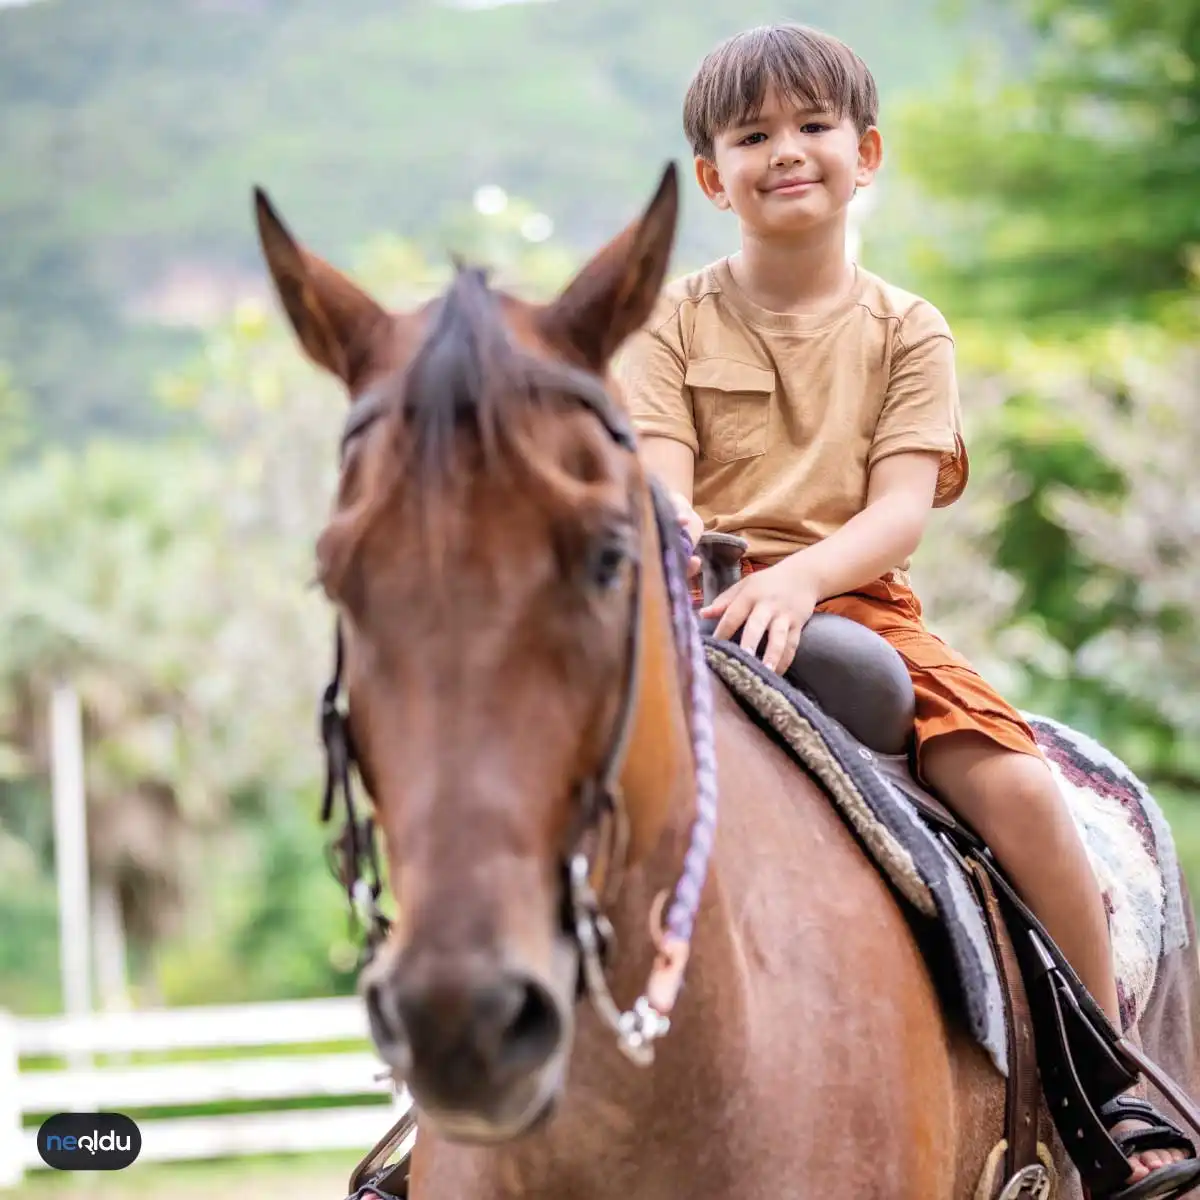 At binme eğitimi nedir ve çocuklar için neden önemlidir?